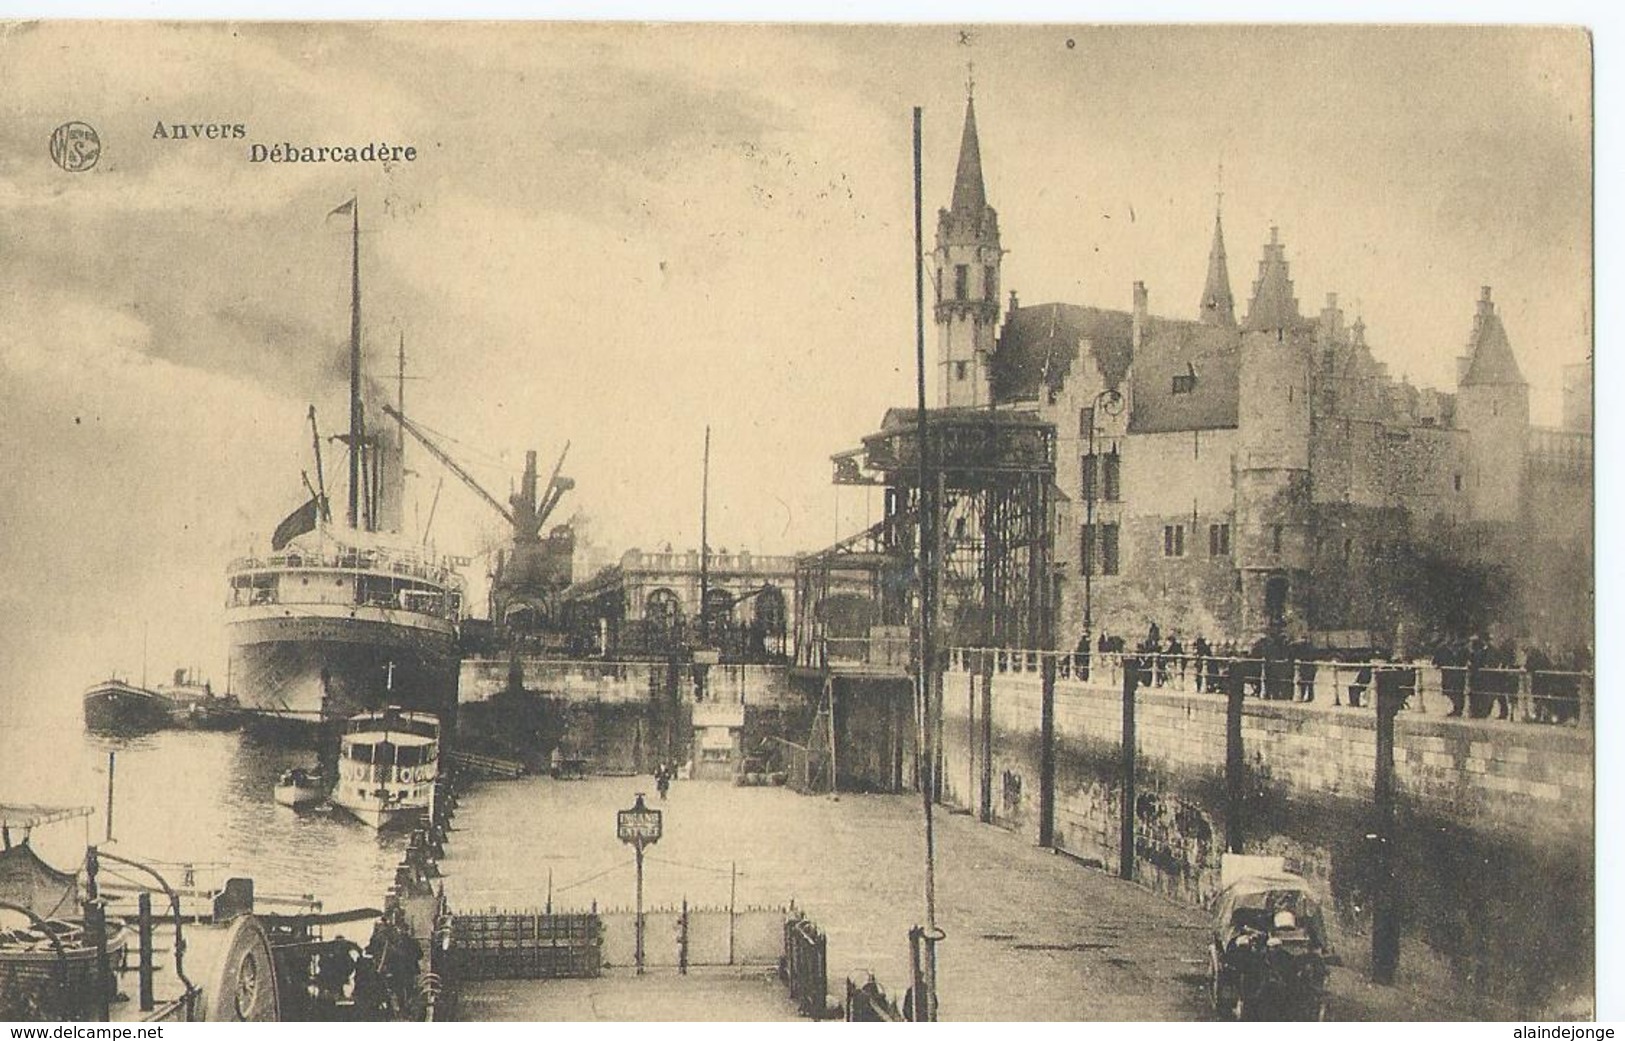 Antwerpen - Anvers - Débarcadère - Edition Weenenk & Snel Serie 3 No 23 - 1923 - Antwerpen